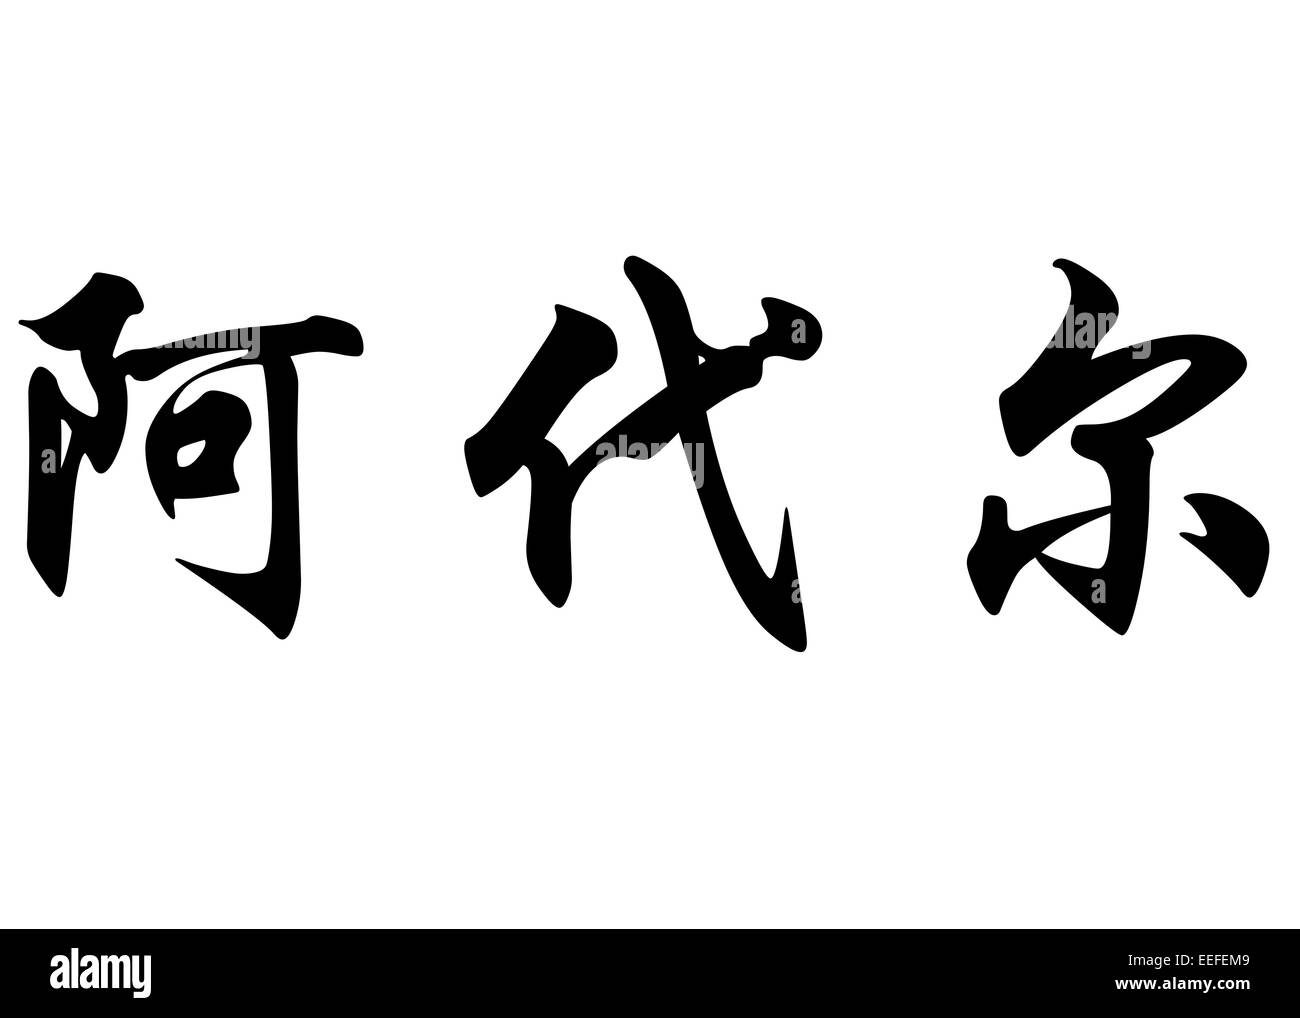 Nom anglais Ader en Kanji ou caractères chinois Calligraphie caractères japonais Banque D'Images